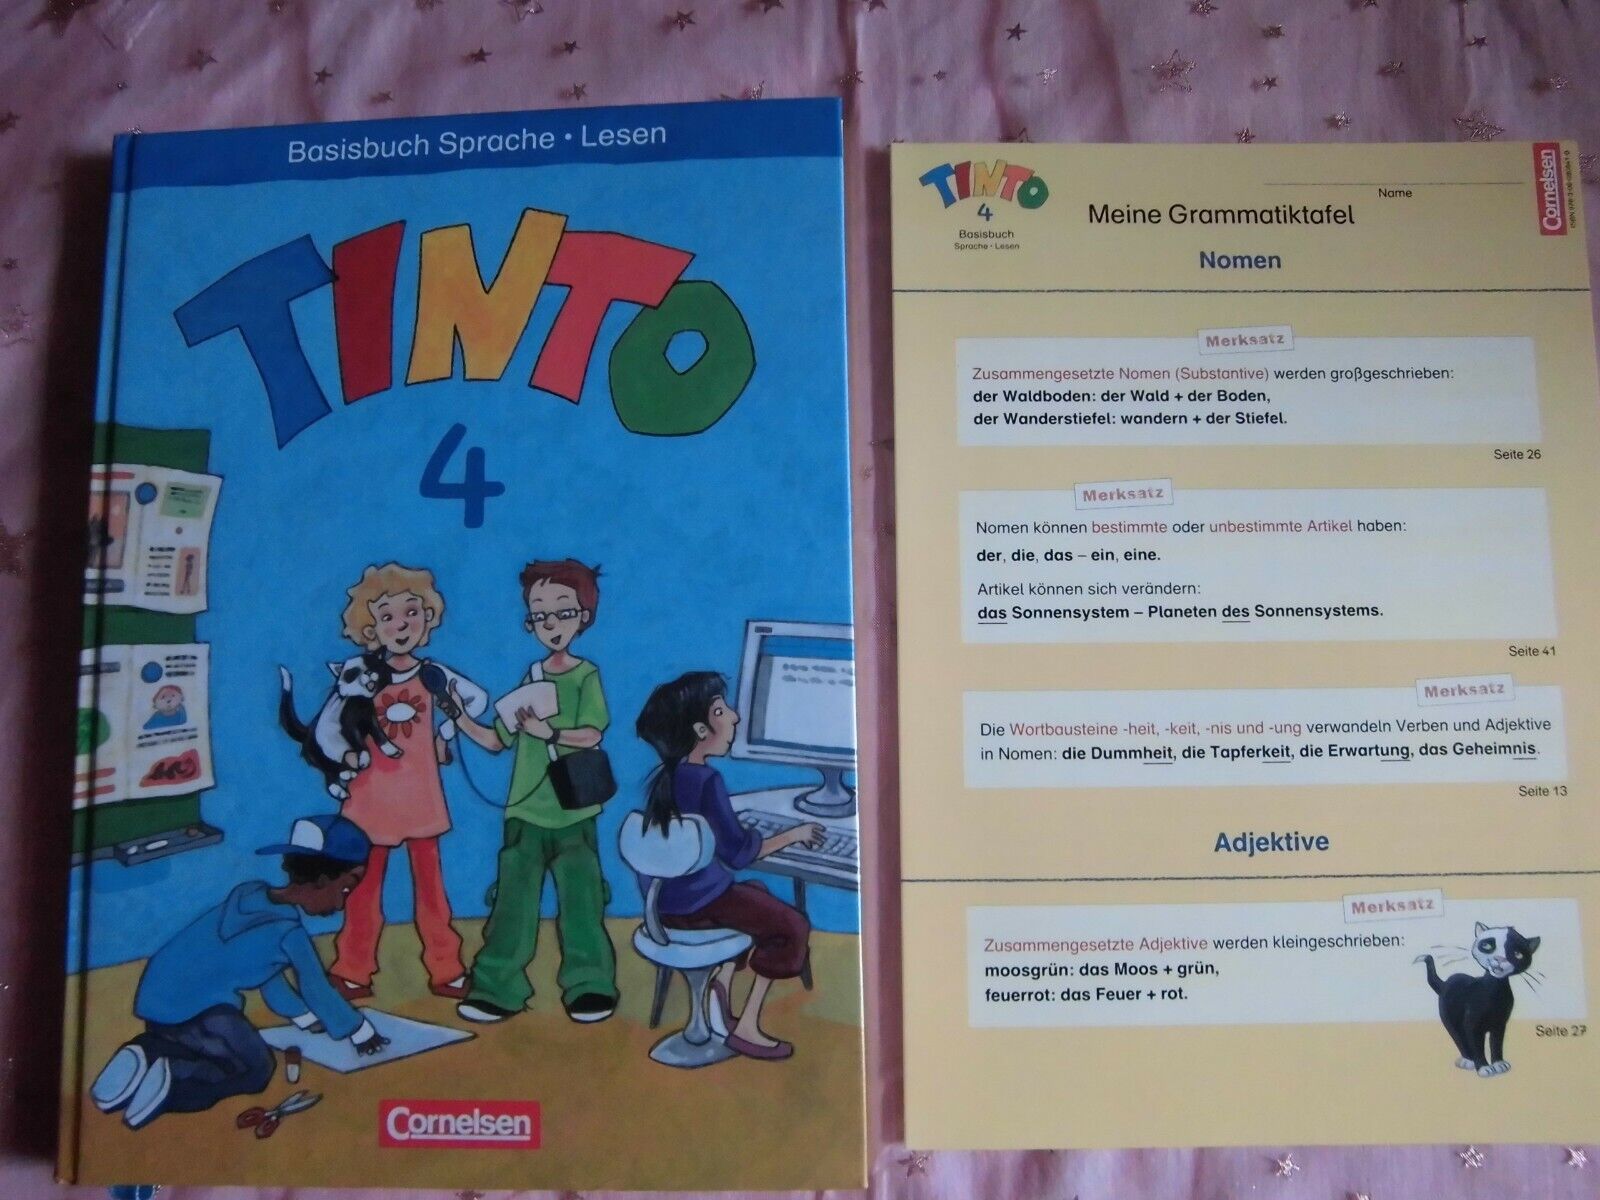 Grundschule, Tinto 4 Basisbuch Sprache Lesen mit Grammatiktafel, Cornelsen